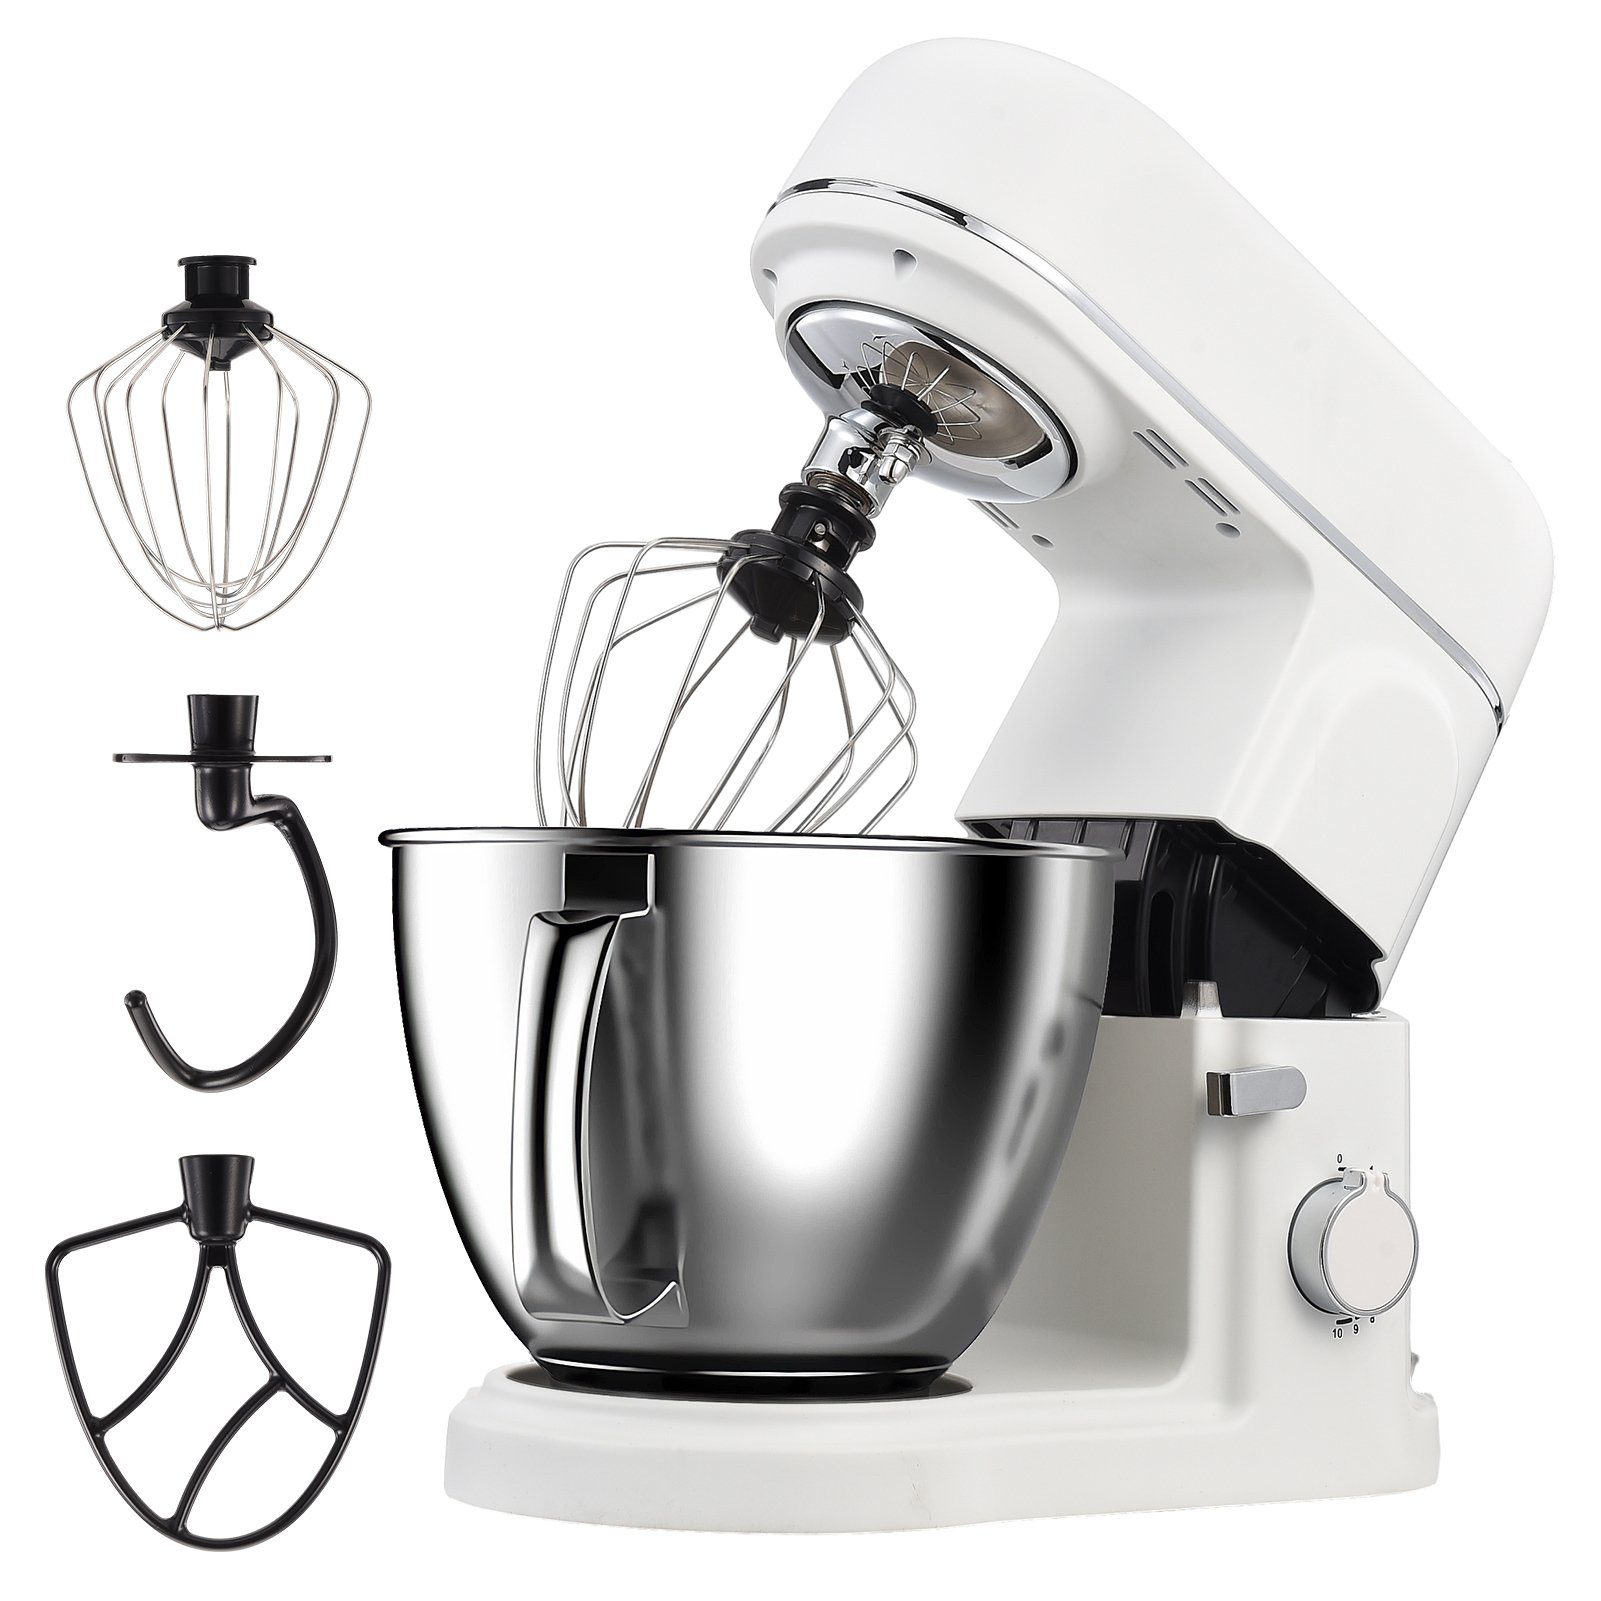 FUROKOY Küchenmaschine mit Kochfunktion Multifunktional Küchenmaschine Mixer Kleine Haushaltsgeräte Maschine weiß